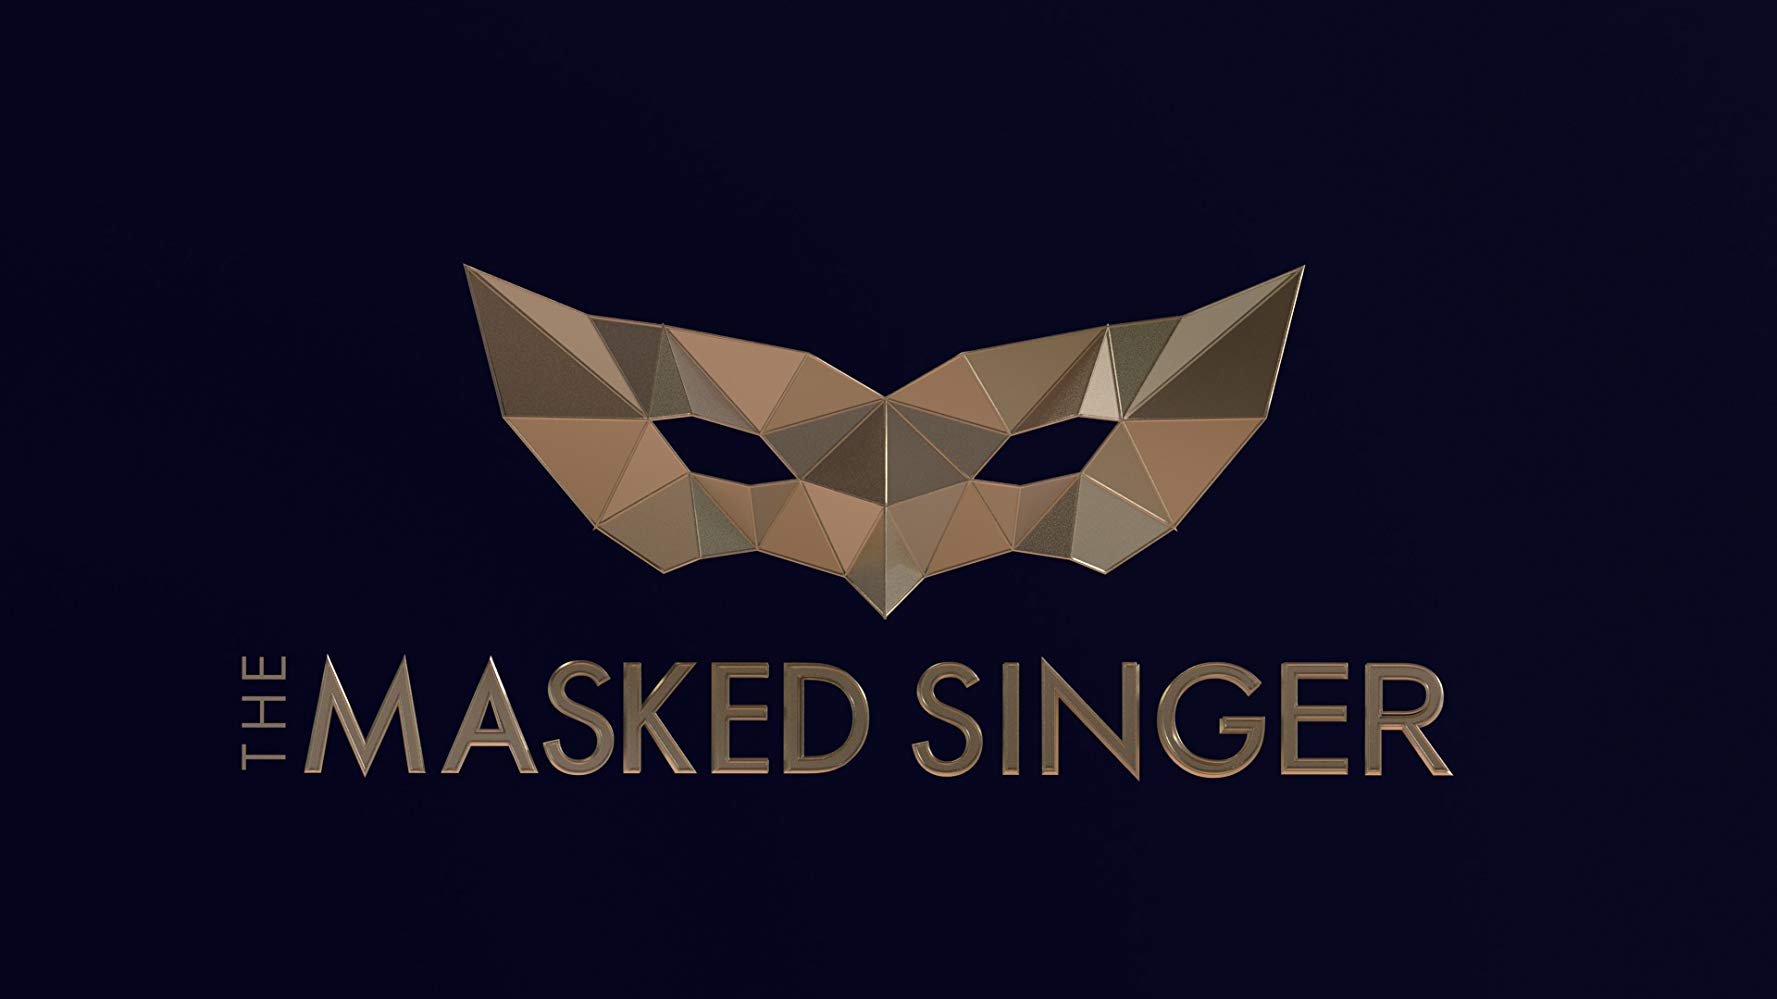 Feuerlöscher, The Masked Singer Wiki